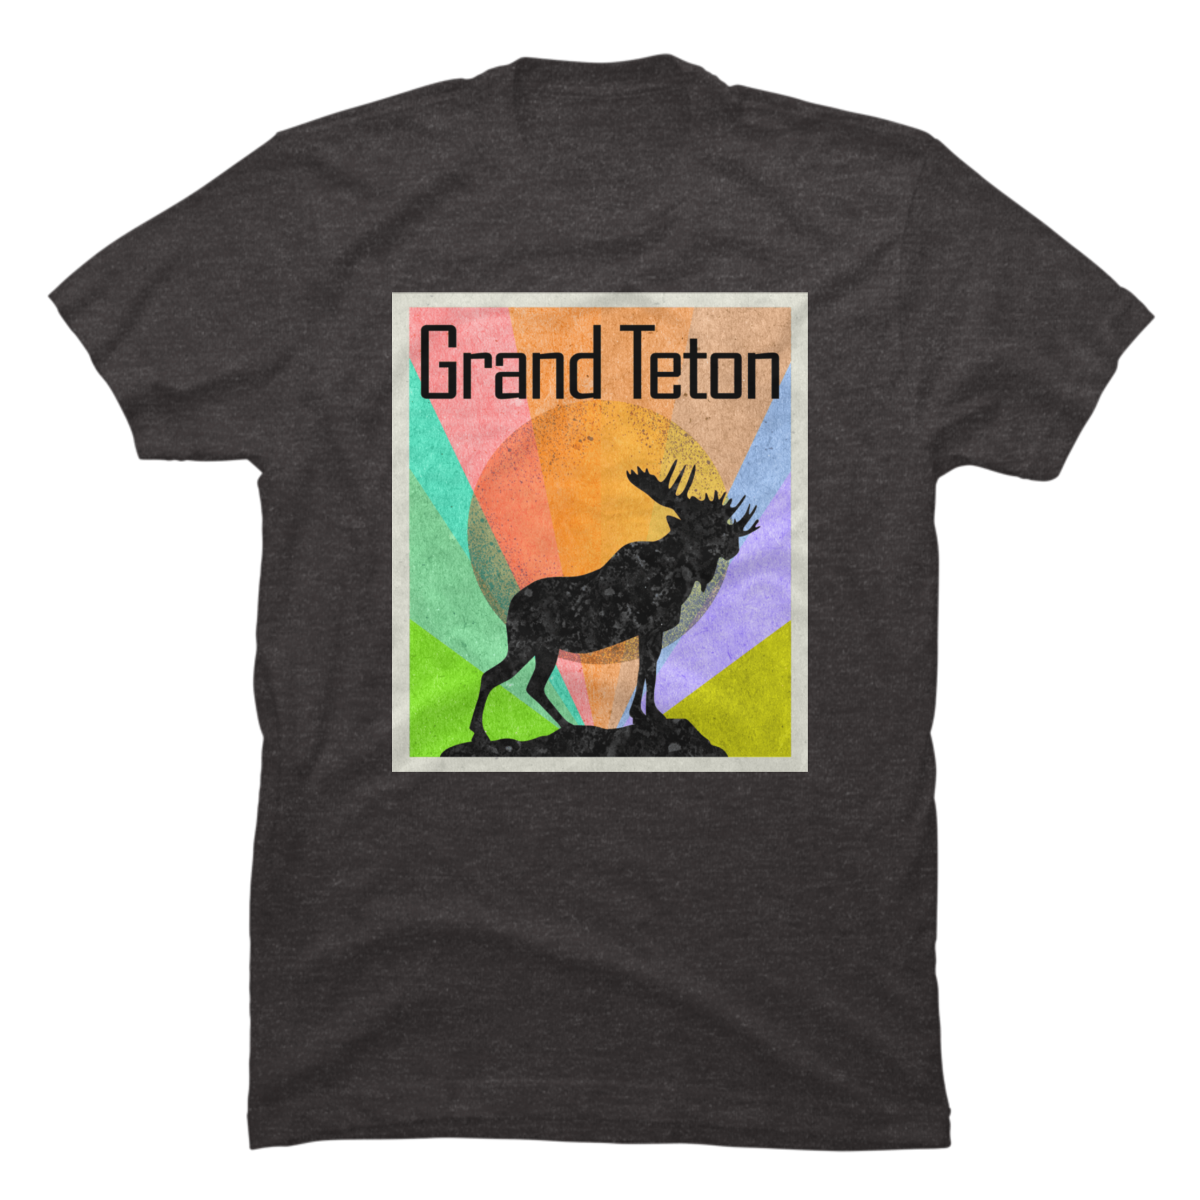 grand teton national park t shirts